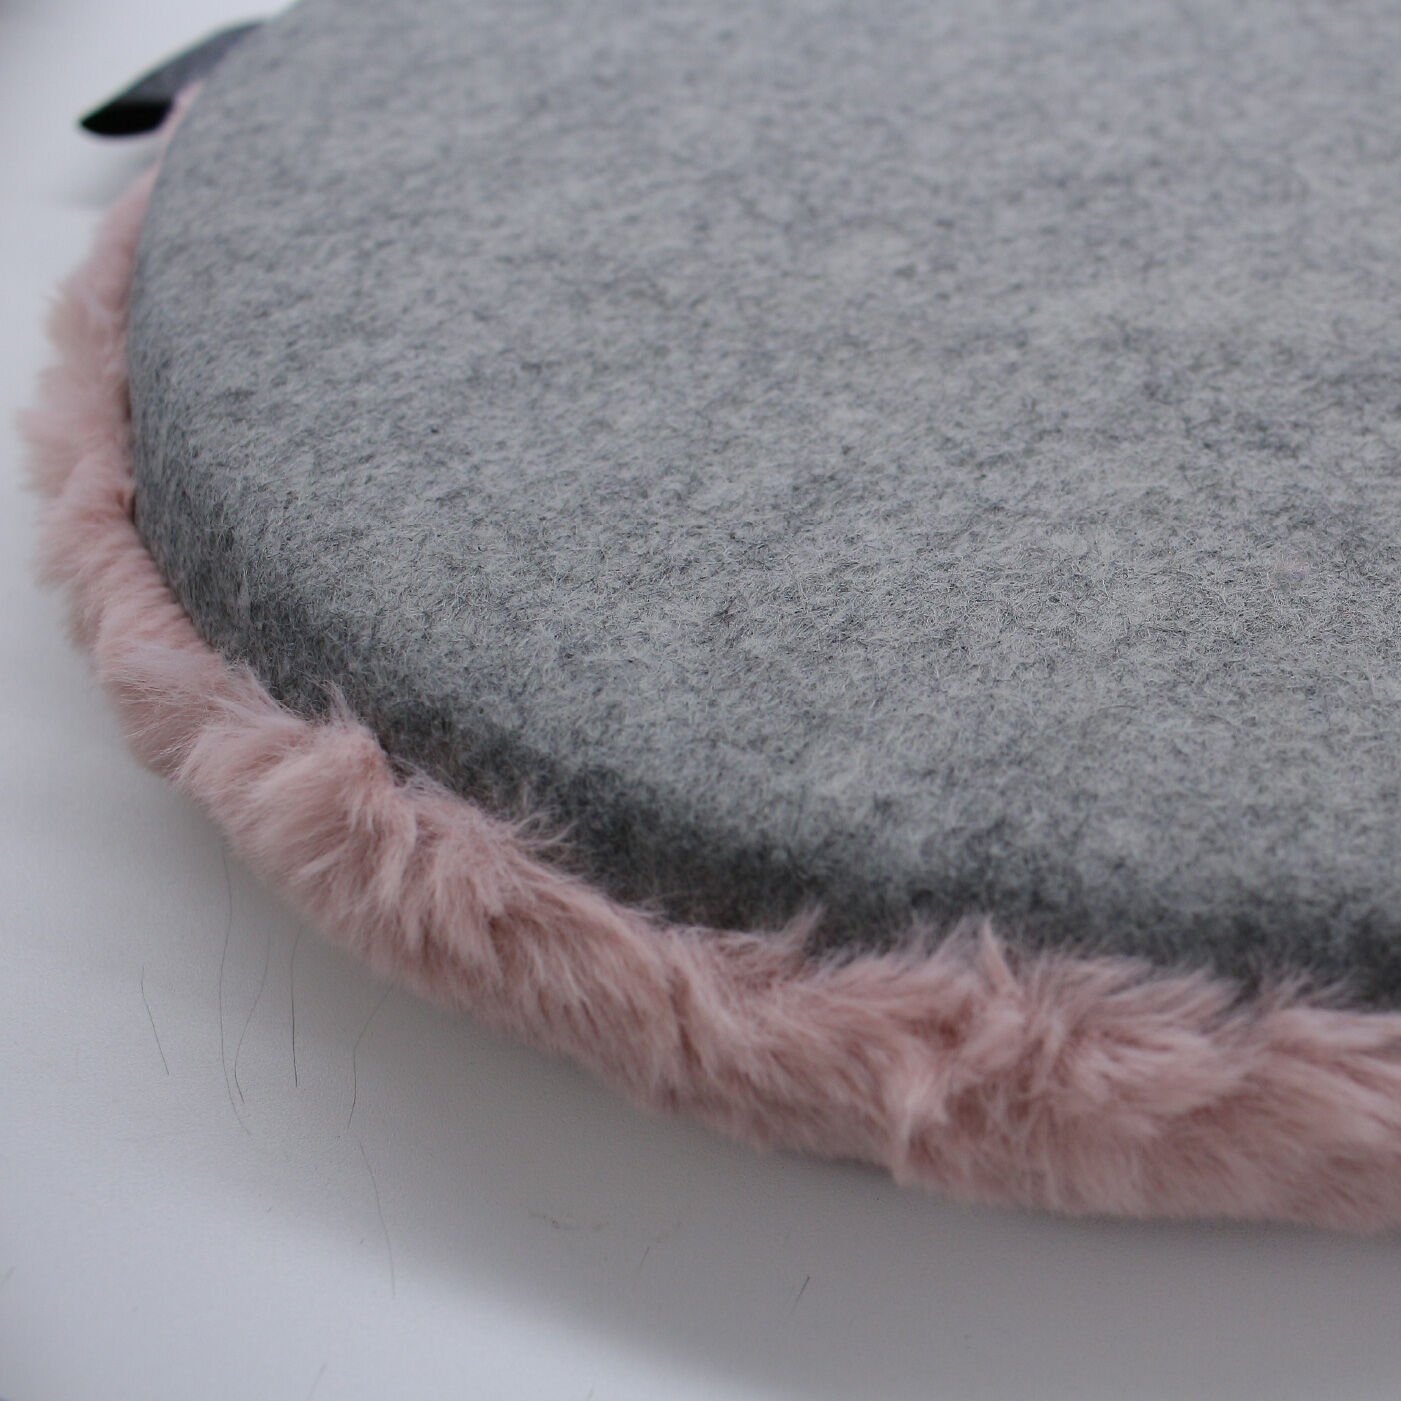 SeeMONO|ワークスペースを快適に 小動物みたいなふわふわチェアパッド|裏面はシンプルなグレーの不織布素材。